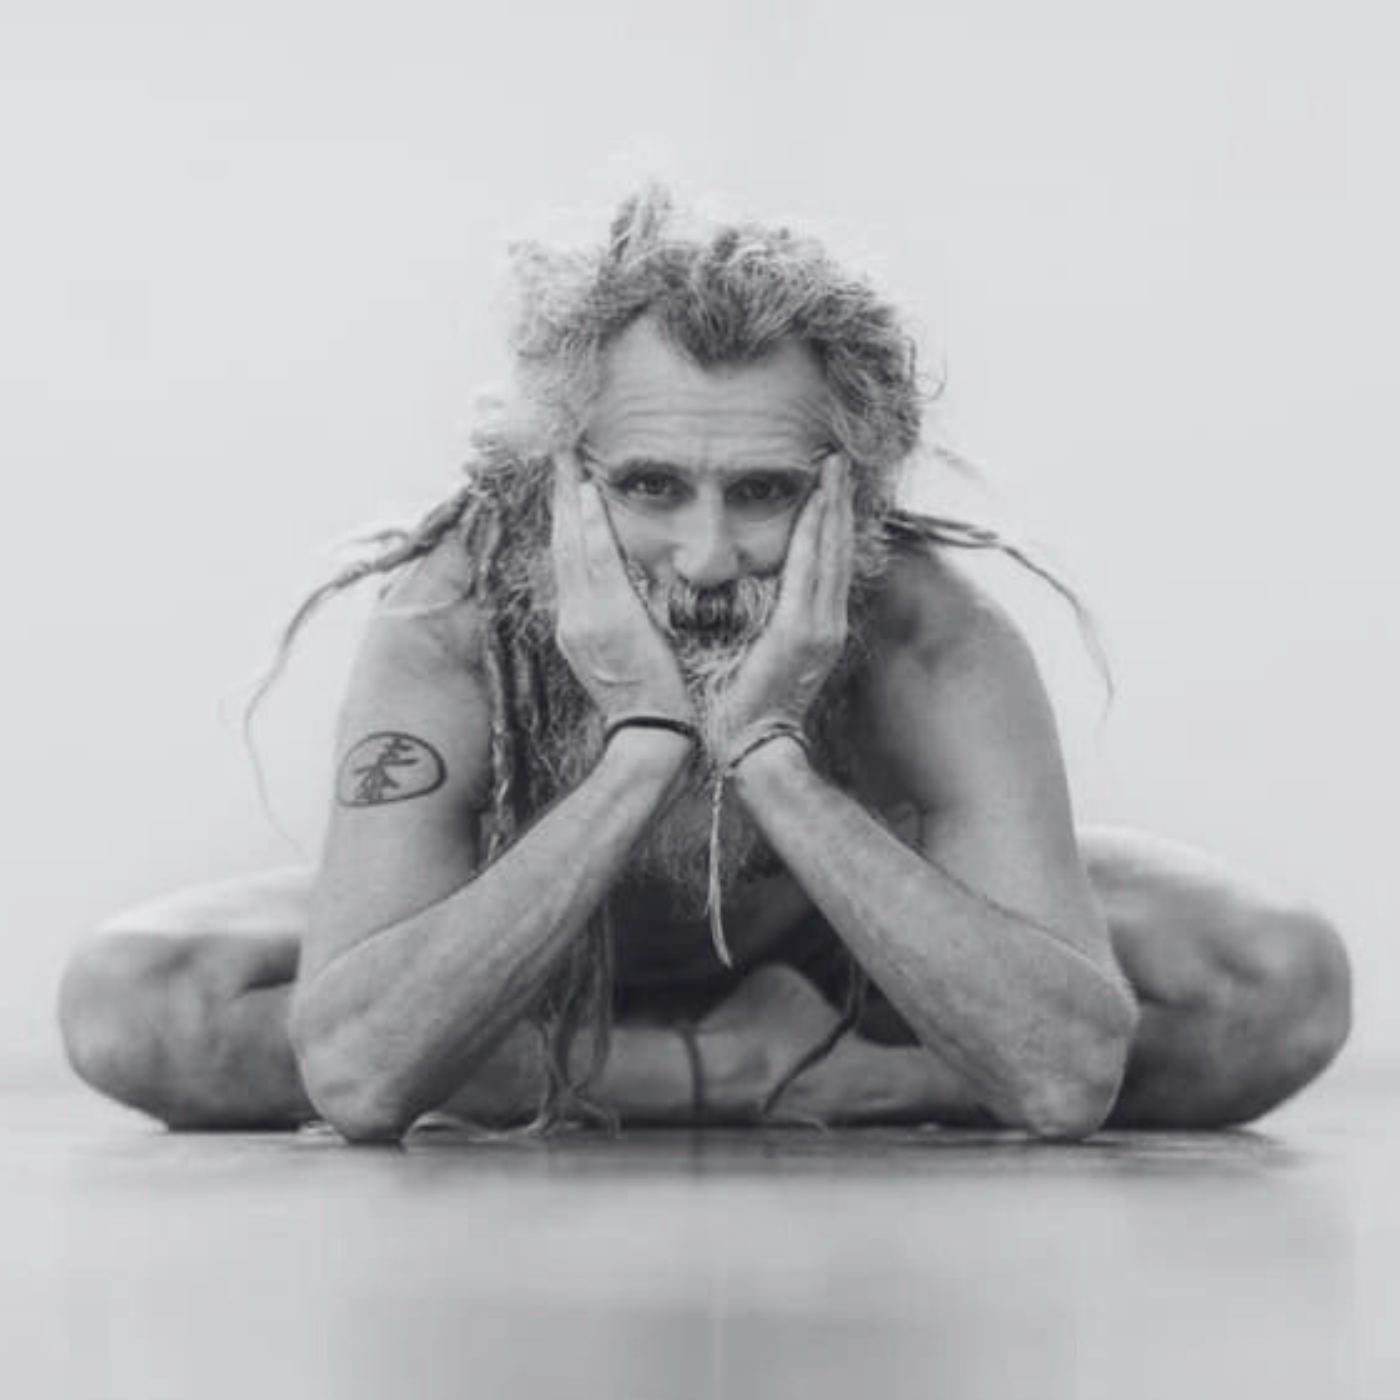 Yoga teacher with dread locks sitting on the floor